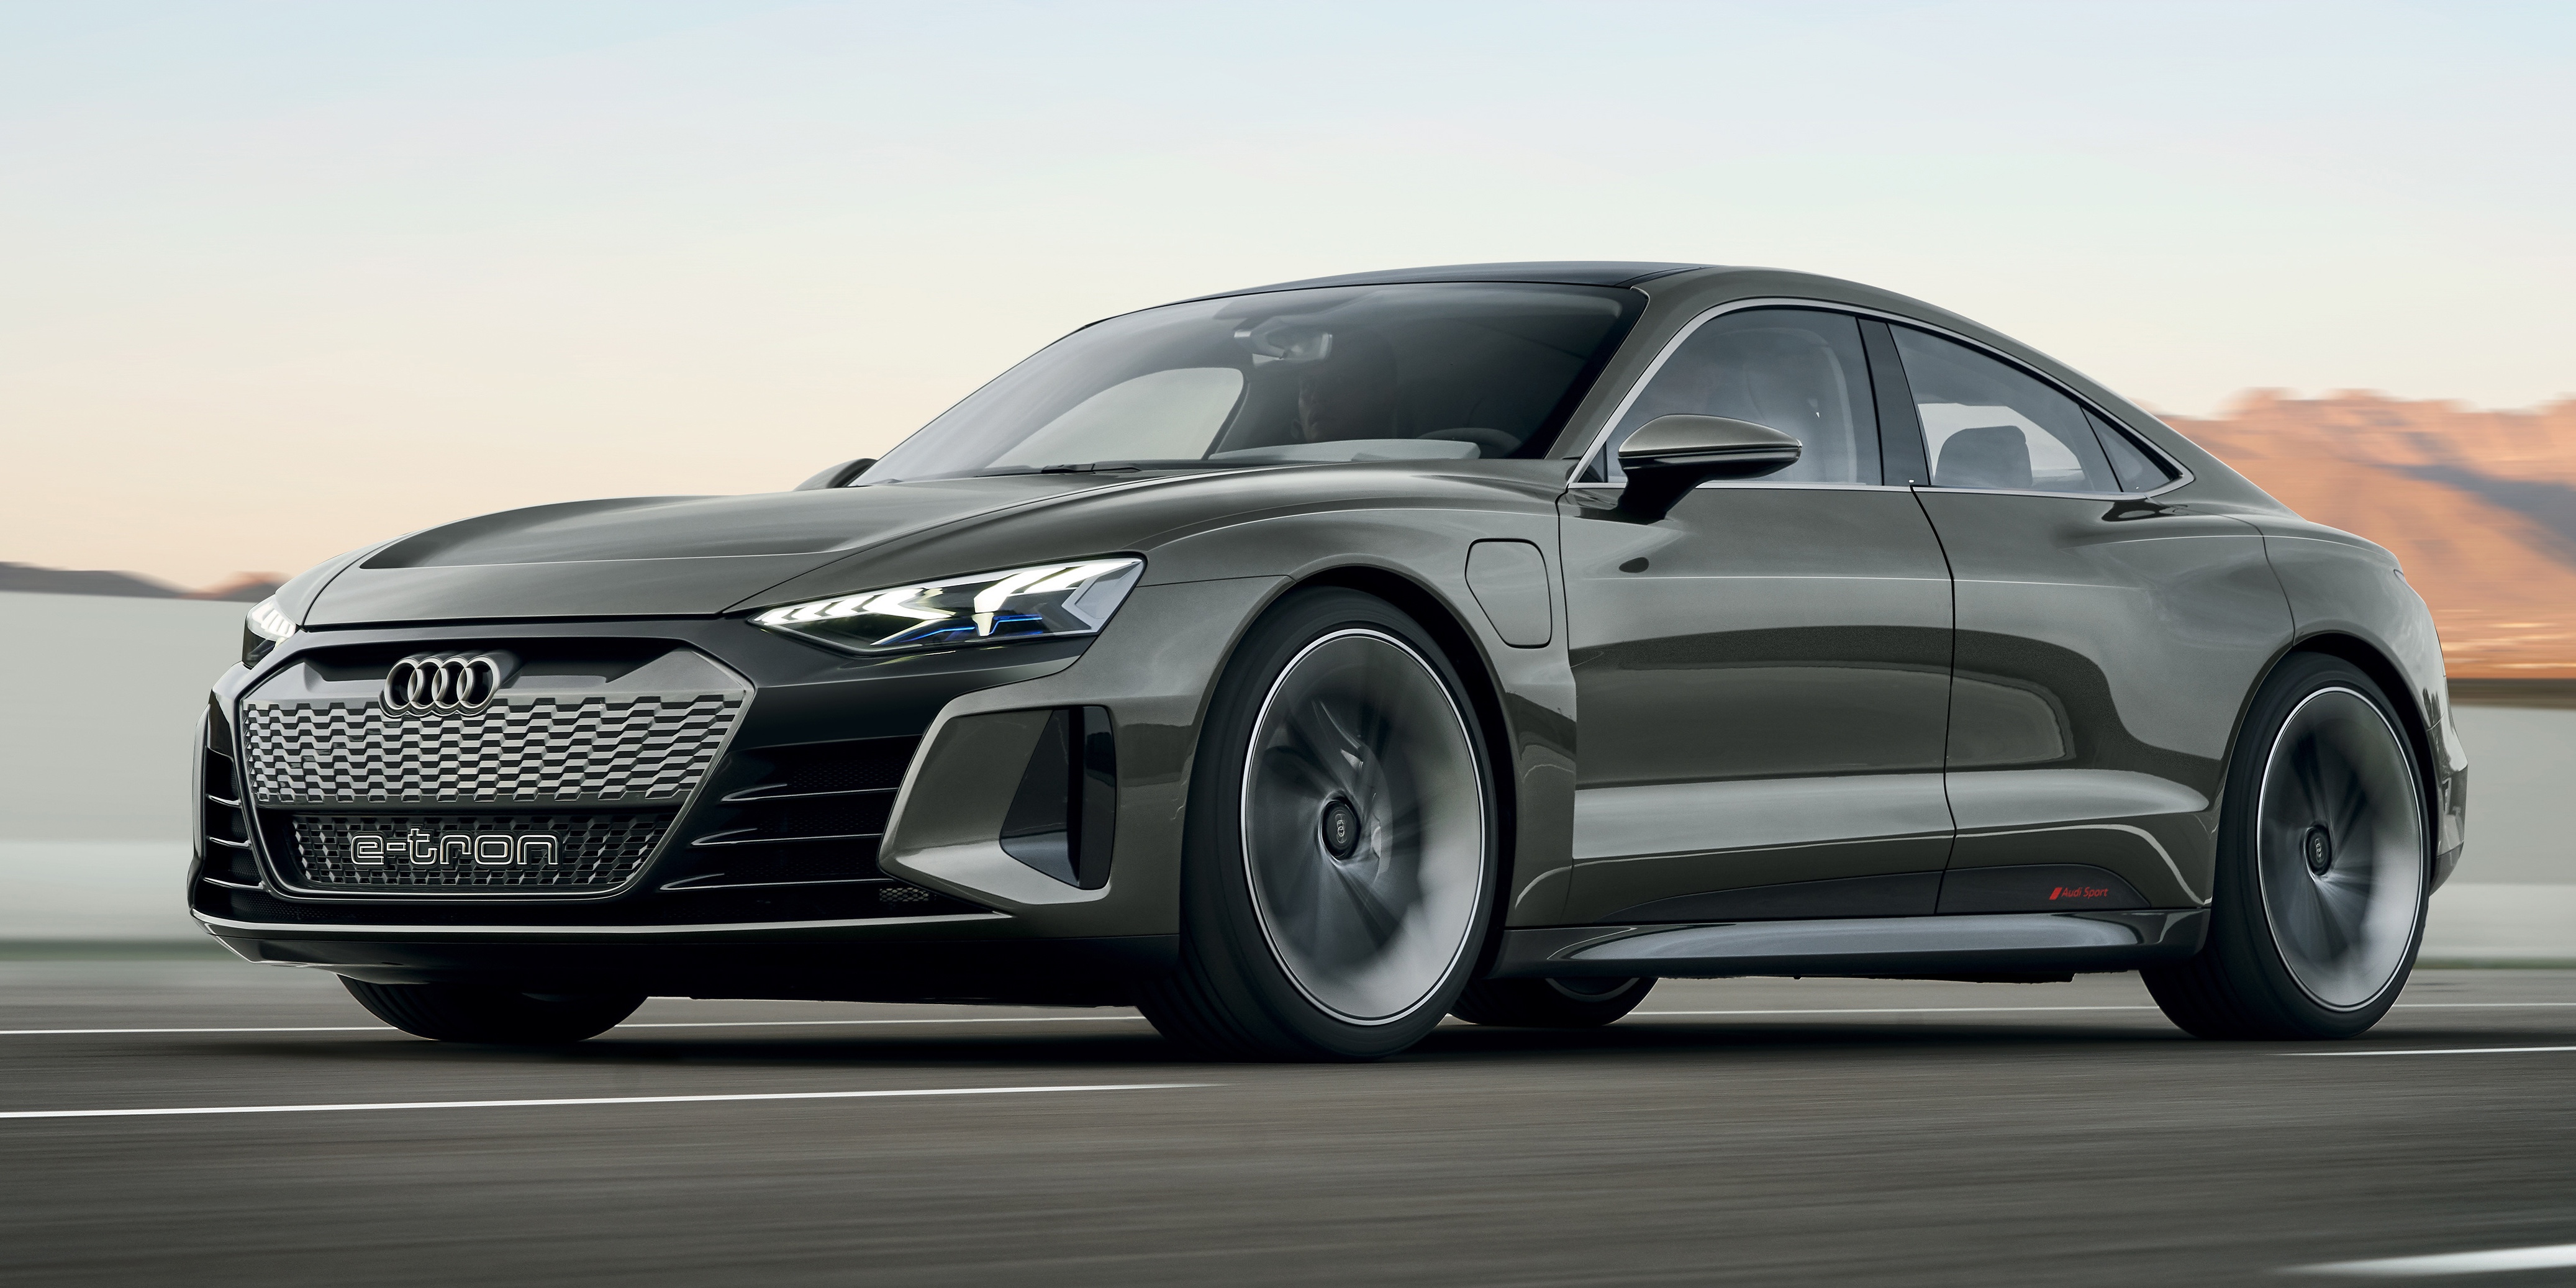 Audi etron GT concept Paul Tan's Automotive News